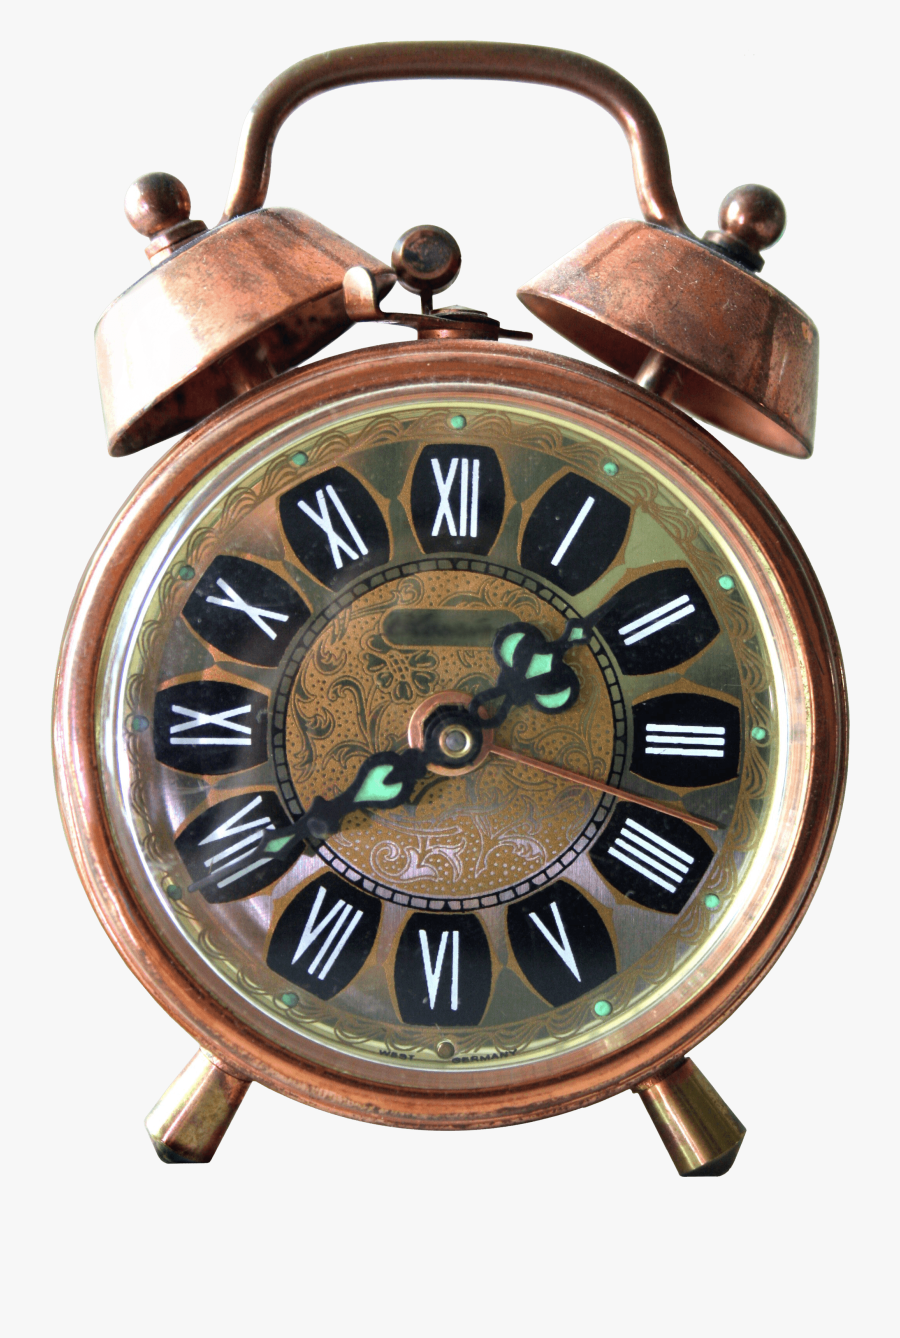 Vintage Alarm Clock Transparent Png - Vintage Alarm Clock Png, Transparent Clipart